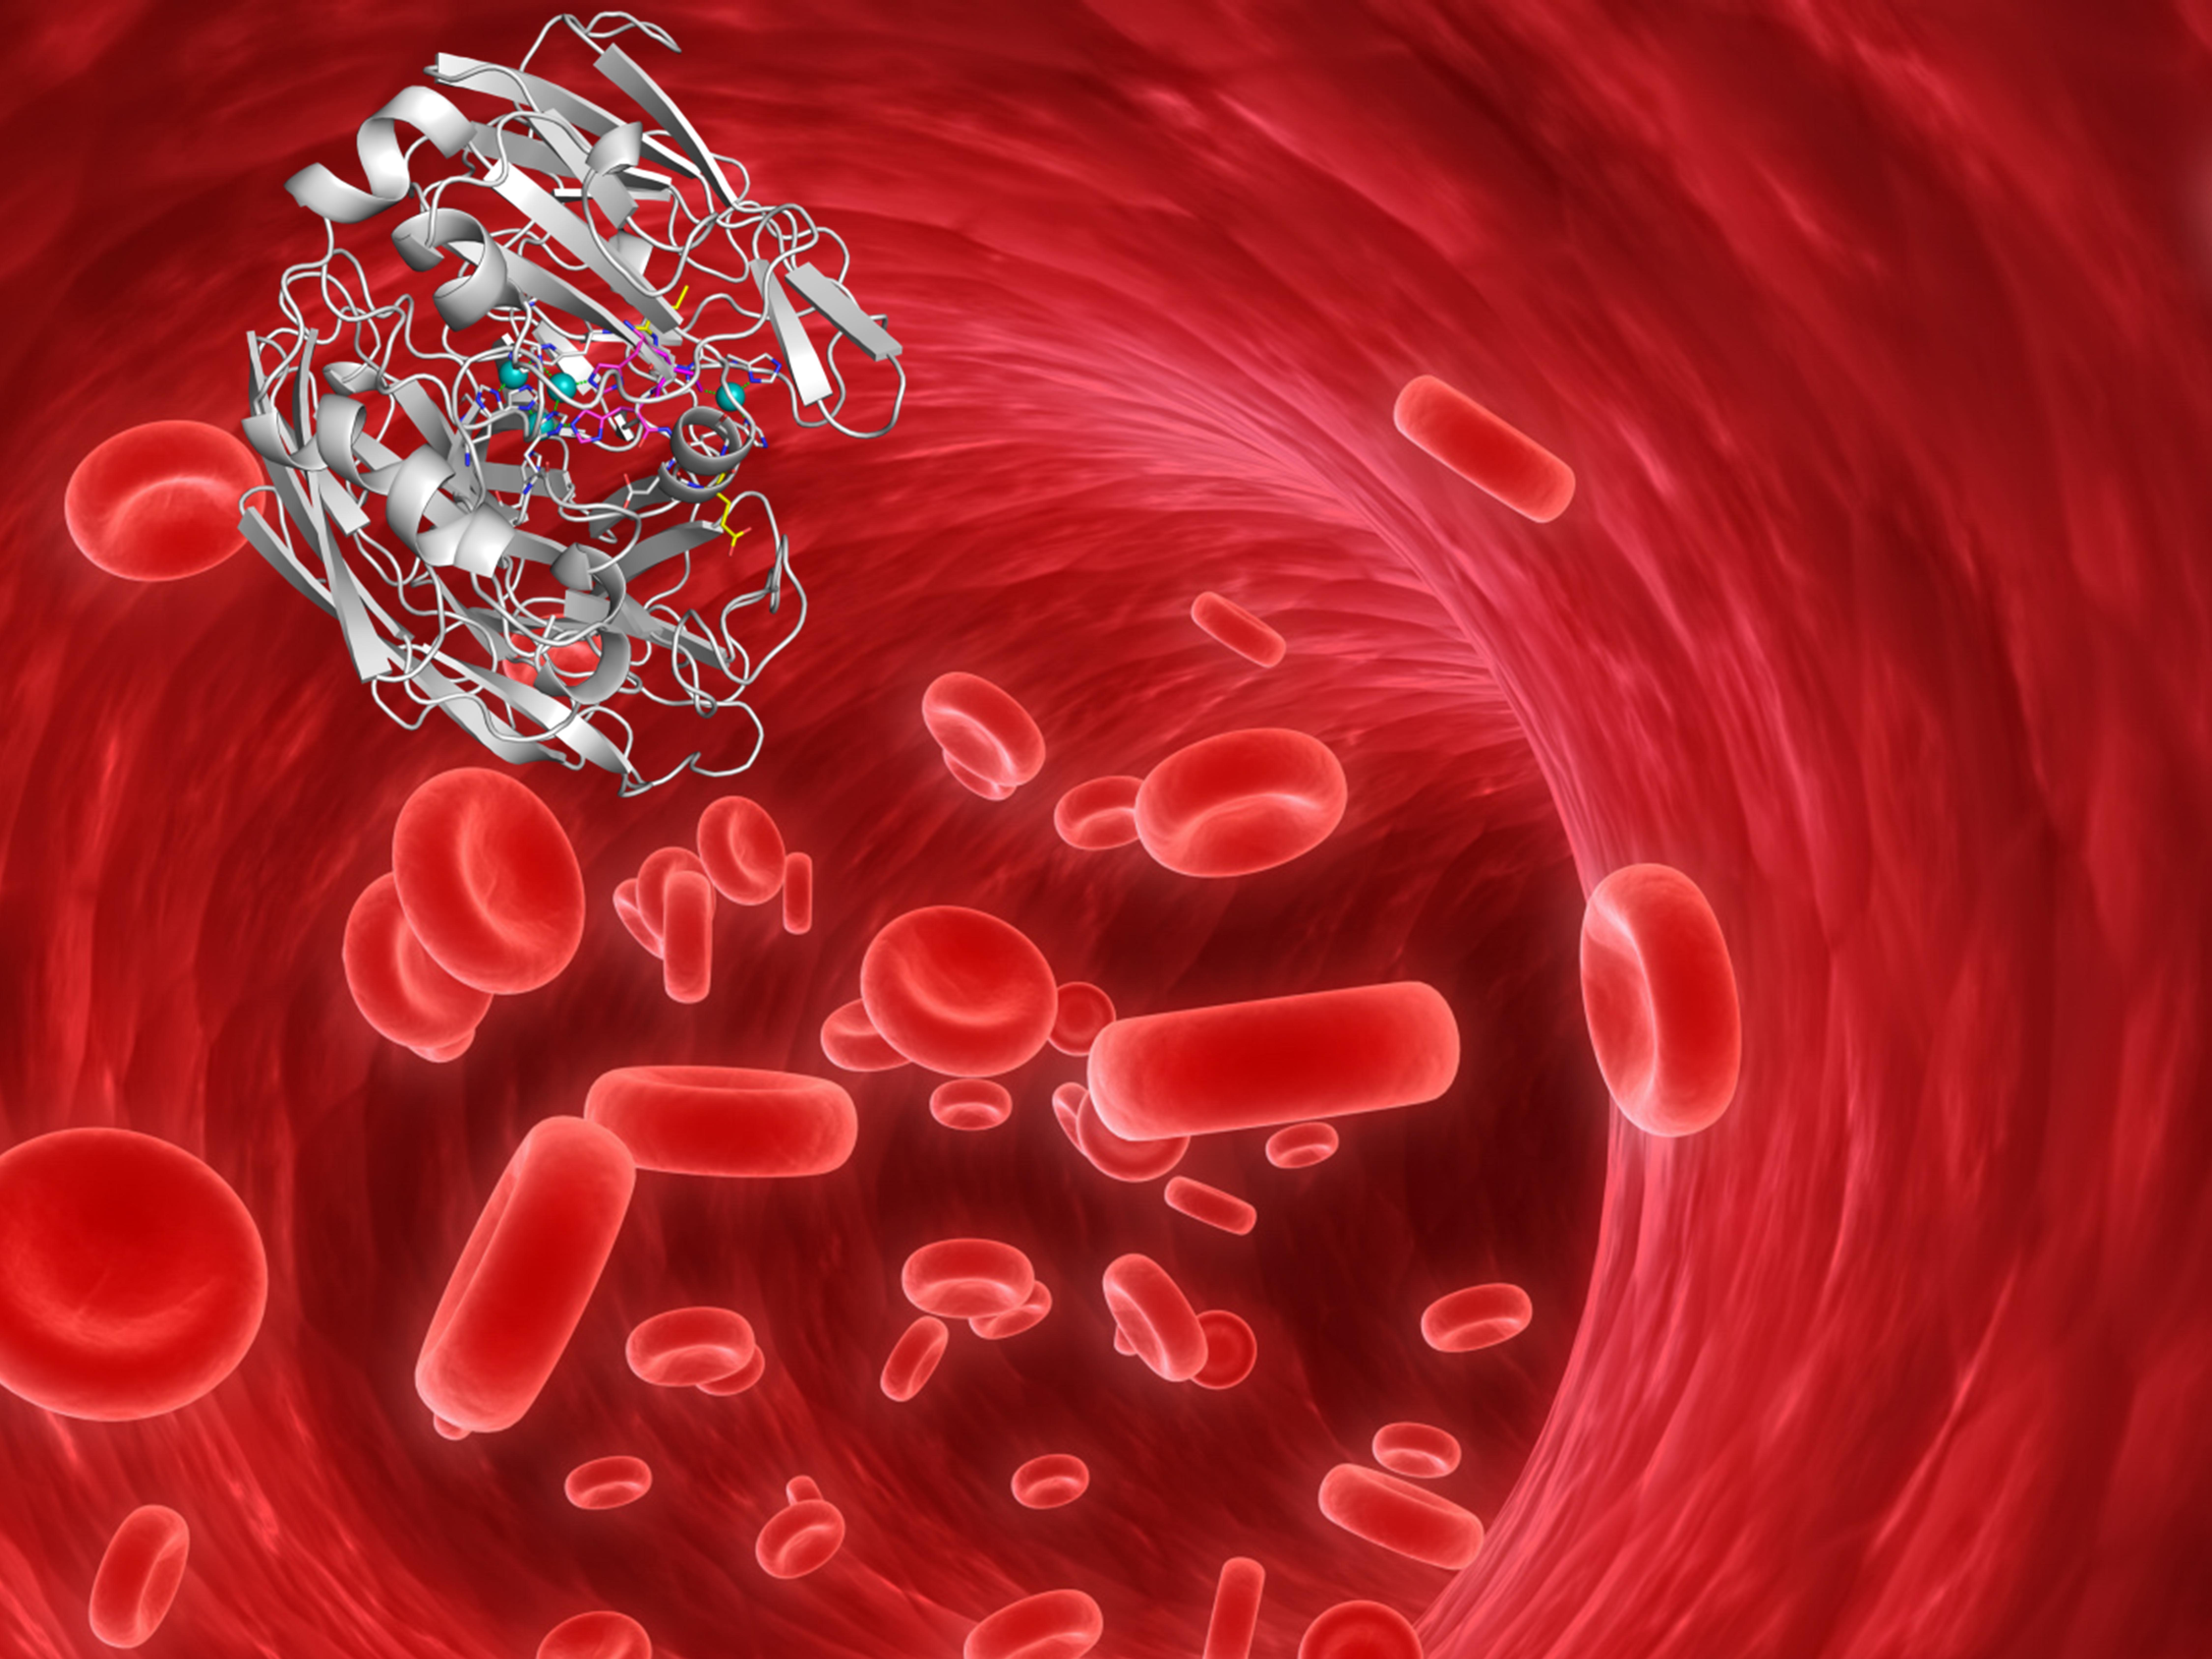 Una enzima mutada puede enviar información desde el torrente sanguíneo